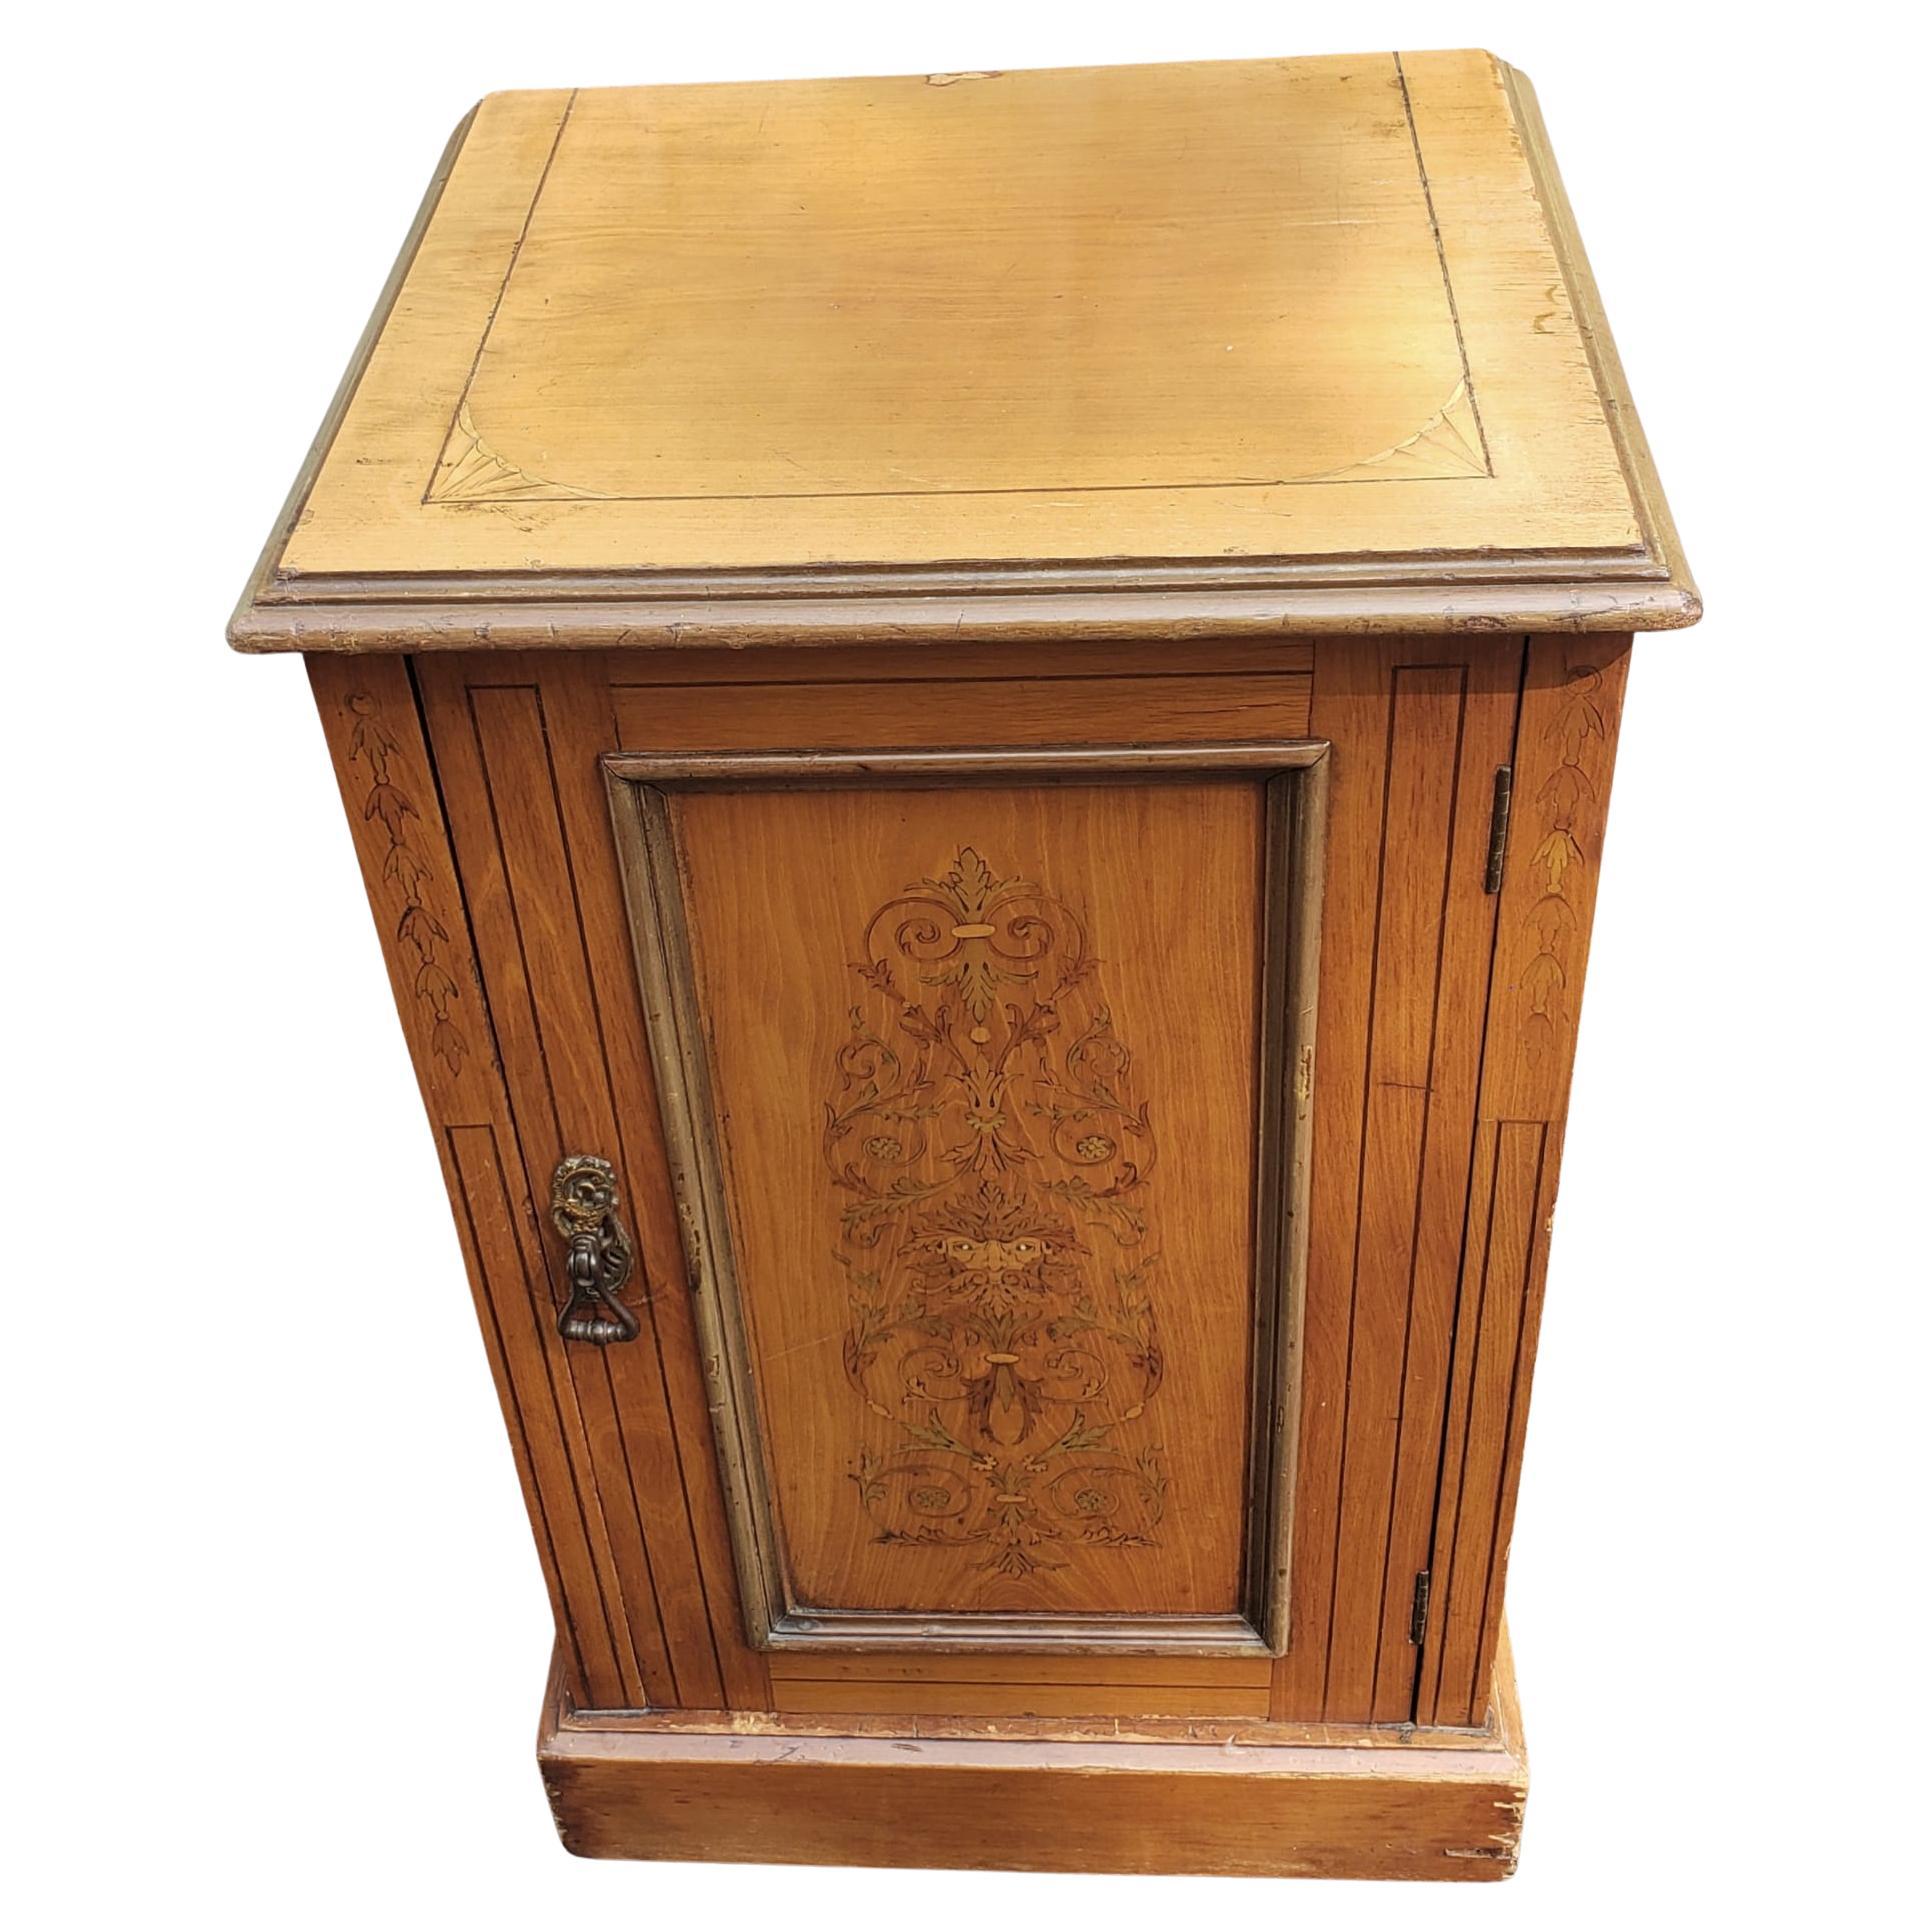 Un meuble d'appoint en érable marqueté de style édouardien des années 1900 mesurant 17,5